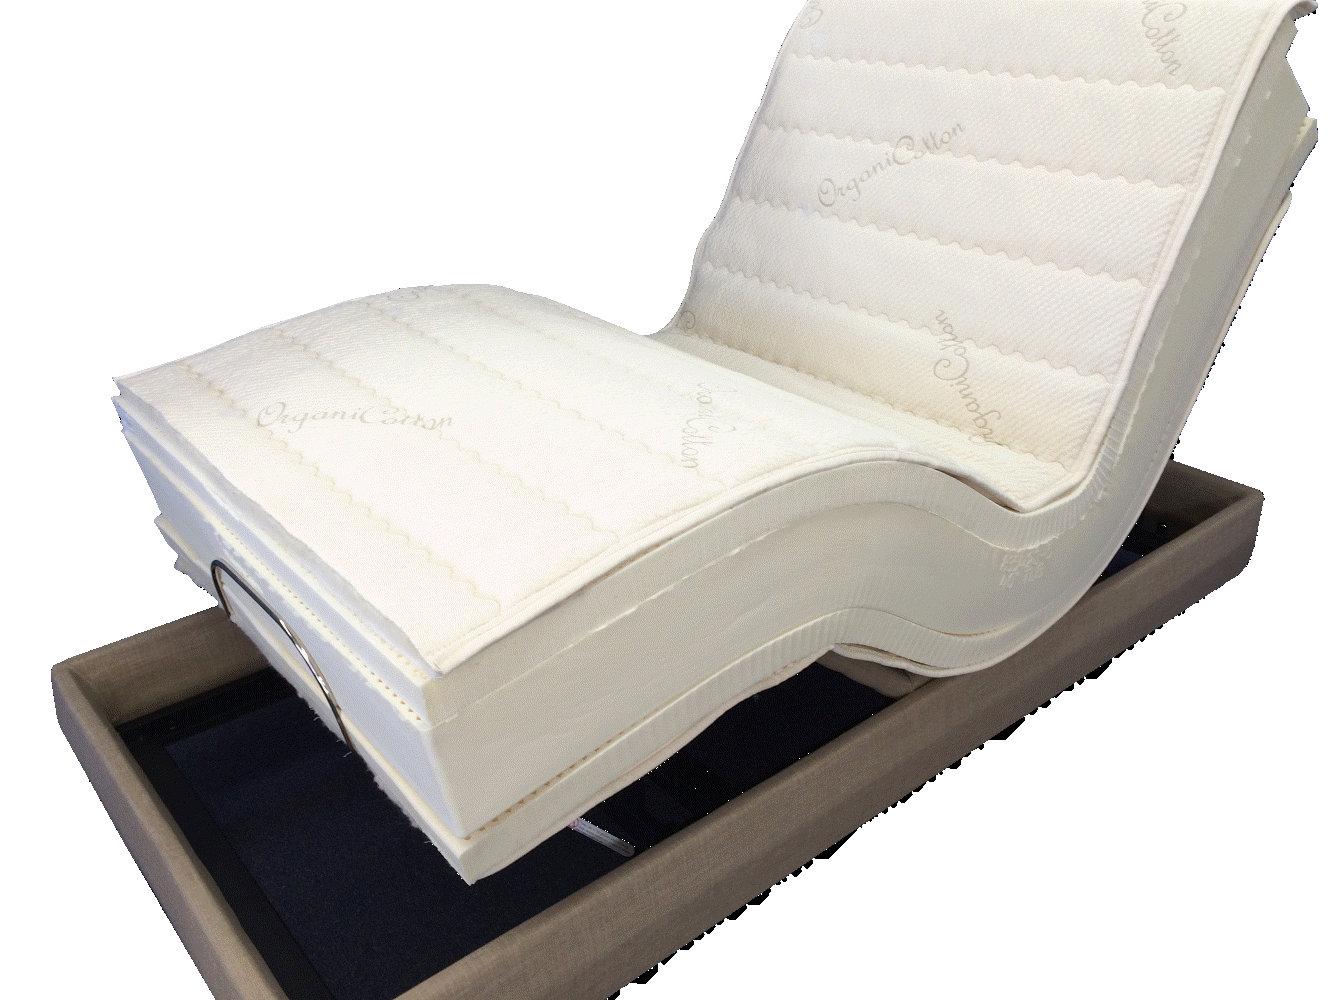 Scottsdale latexpedic latex natural organic foam whole mattress